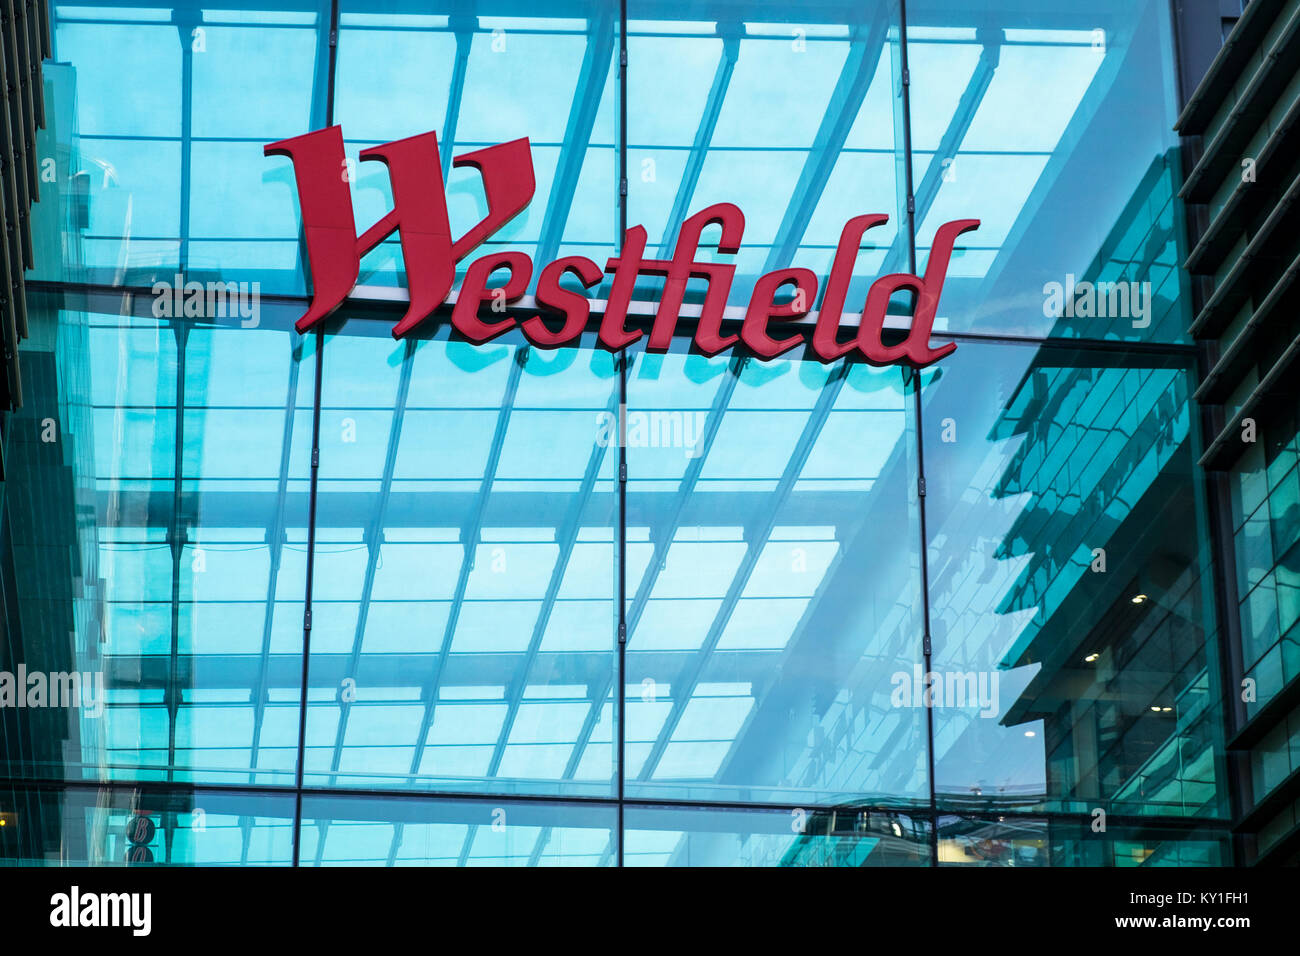 El centro comercial Westfield firmar logo, Stratford, London, UK Foto de stock